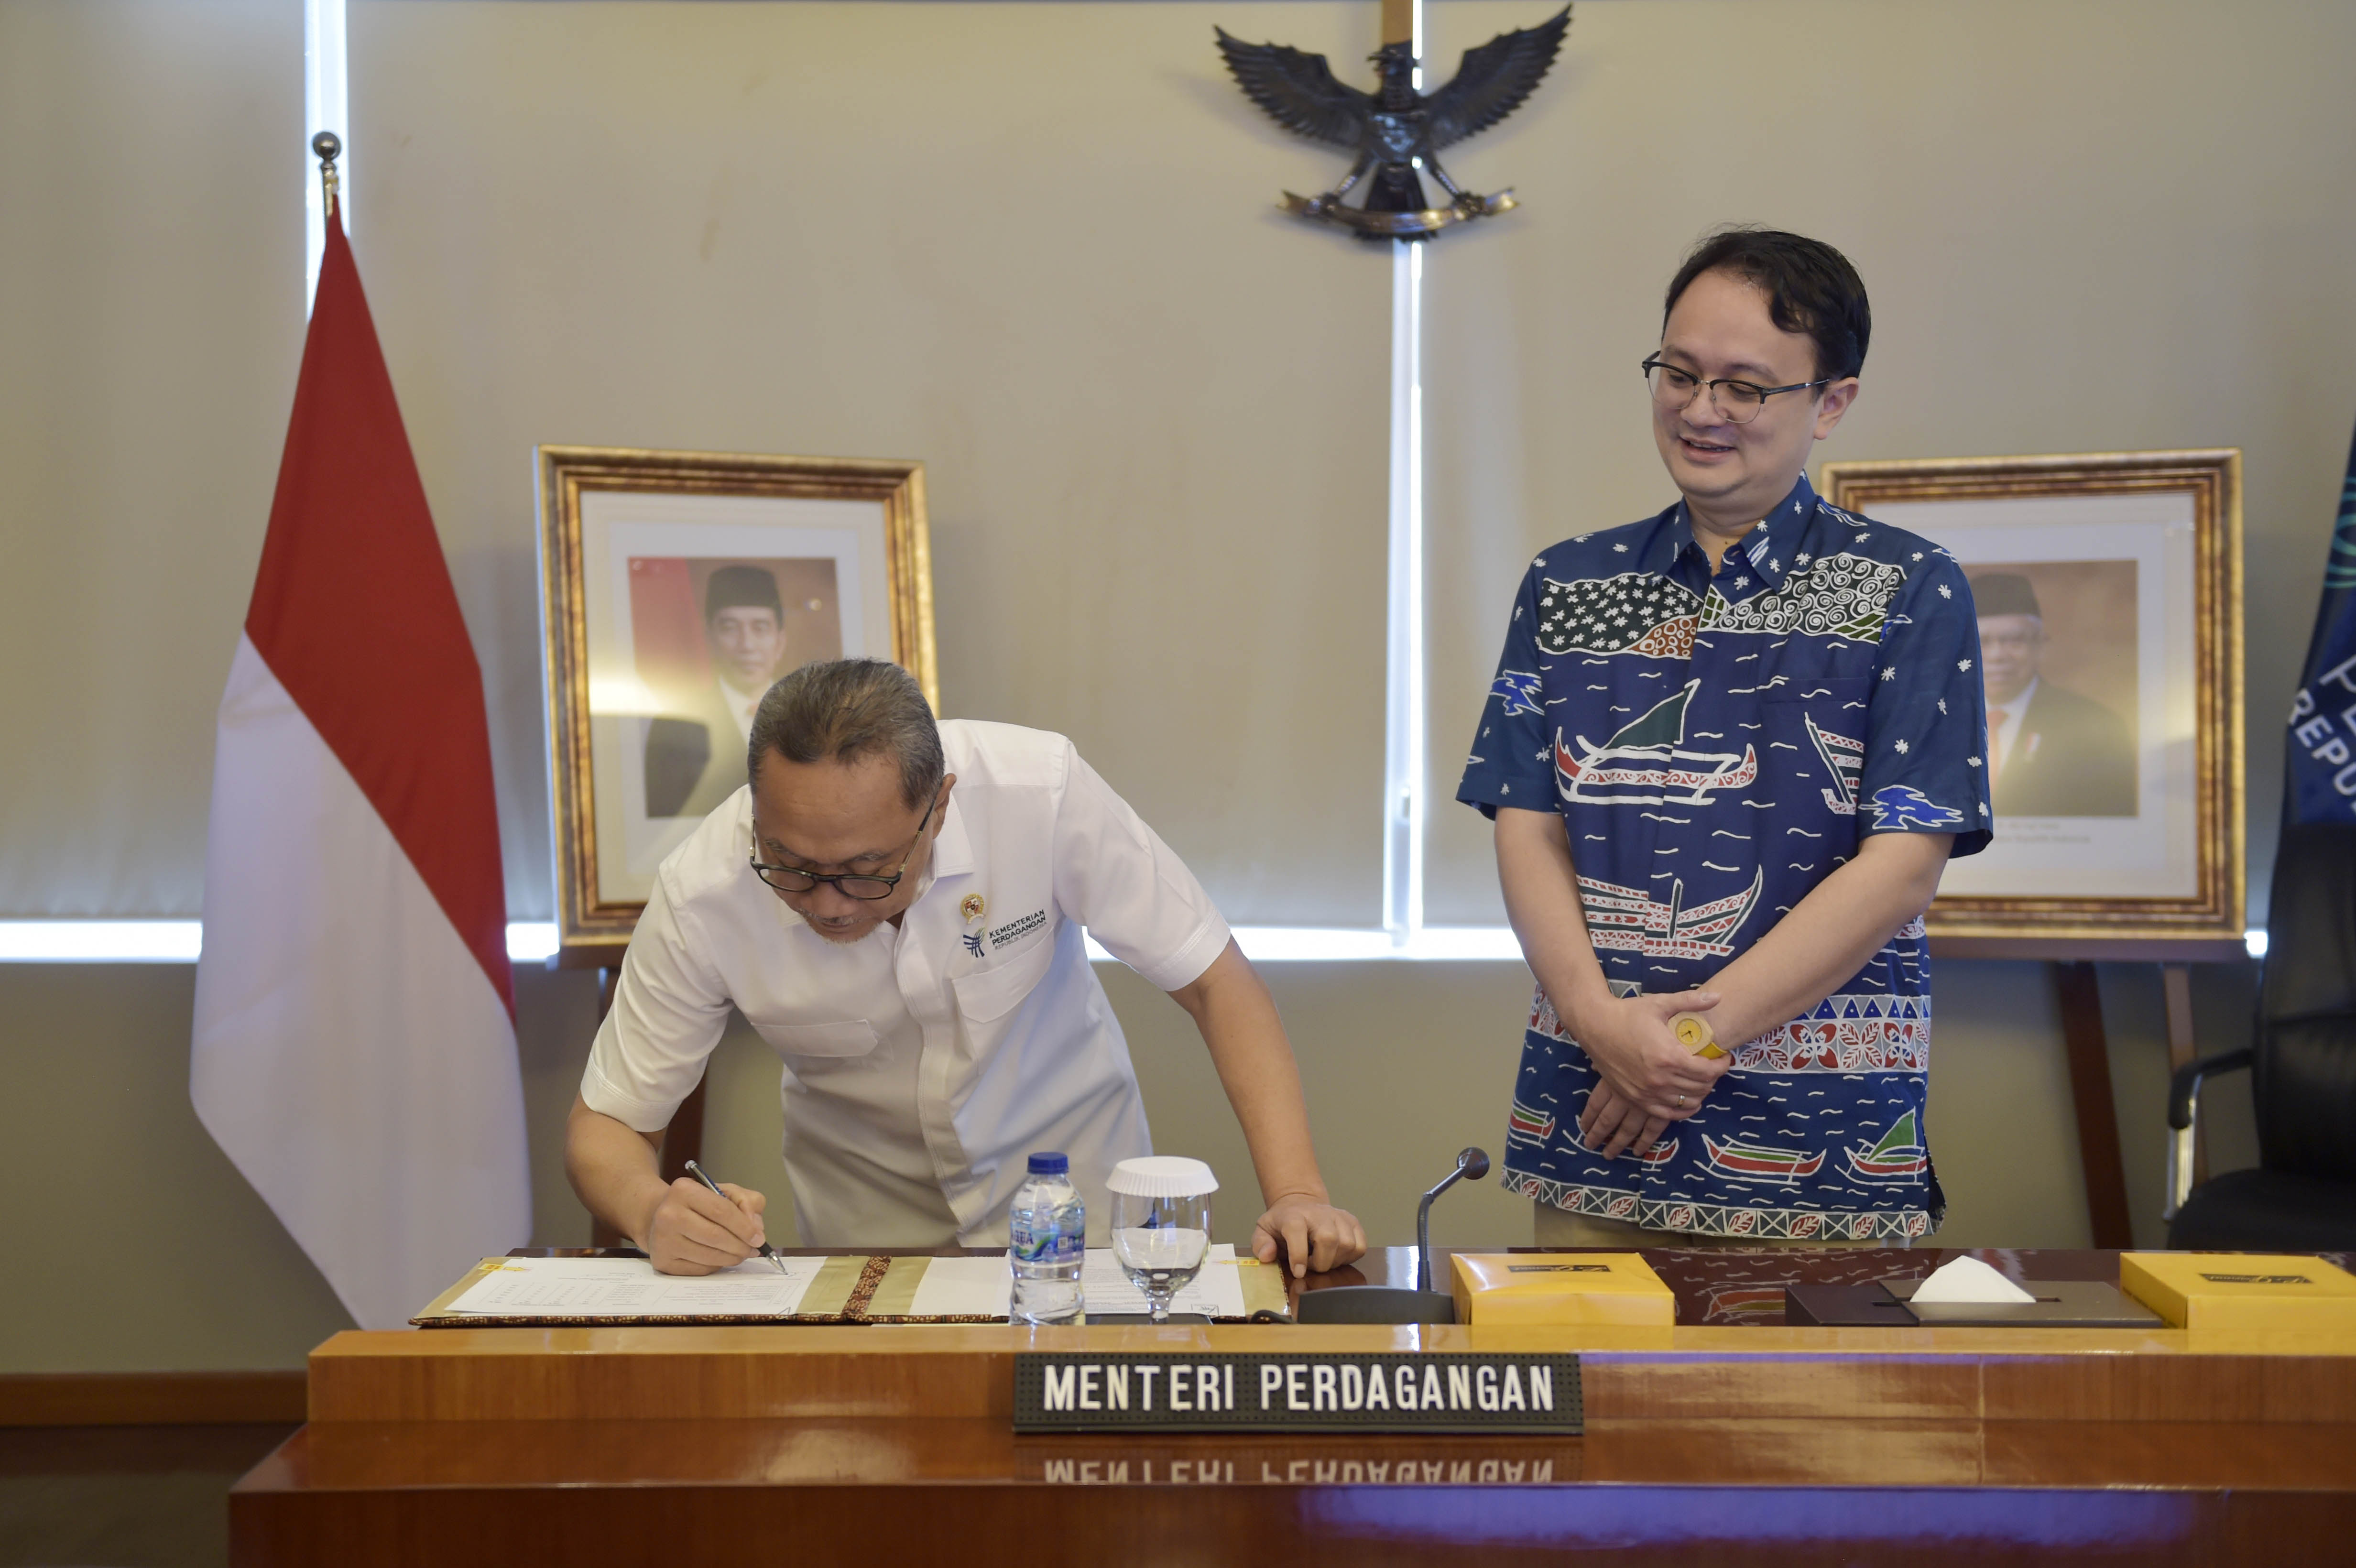 Menteri Perdagangan, Zulkifli Hasan didampingi Wakil Menteri Perdagangan, Jerry Sambuaga menandatangani Perjanjian Kinerja Kementerian Perdagangan Tahun Anggaran 2023 yang berlangsung di Kantor Kementerian Perdagangan, Jakarta, Rabu (25 Jan).